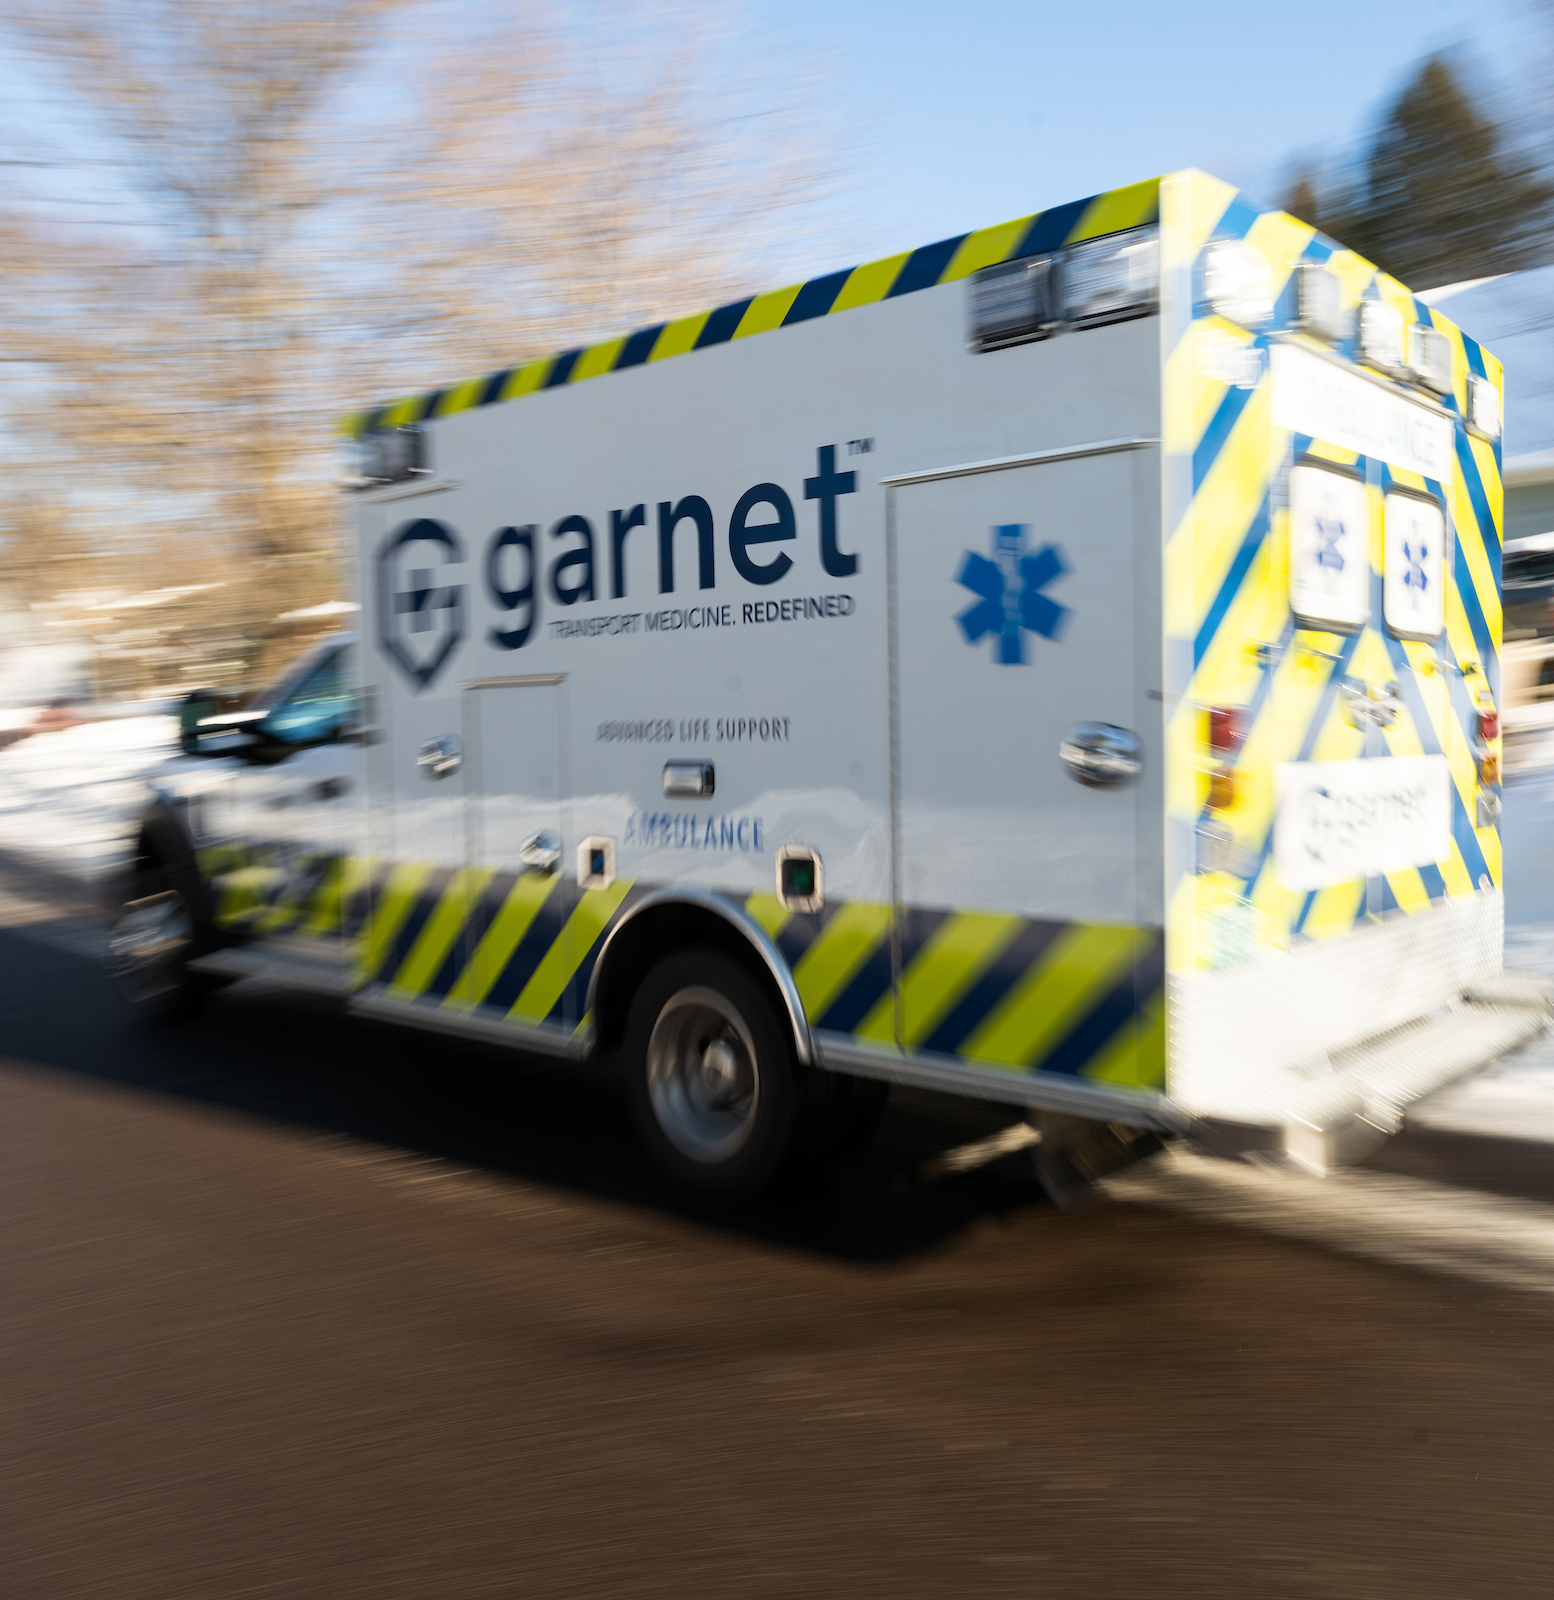 garnet healthcare vermont ambulance